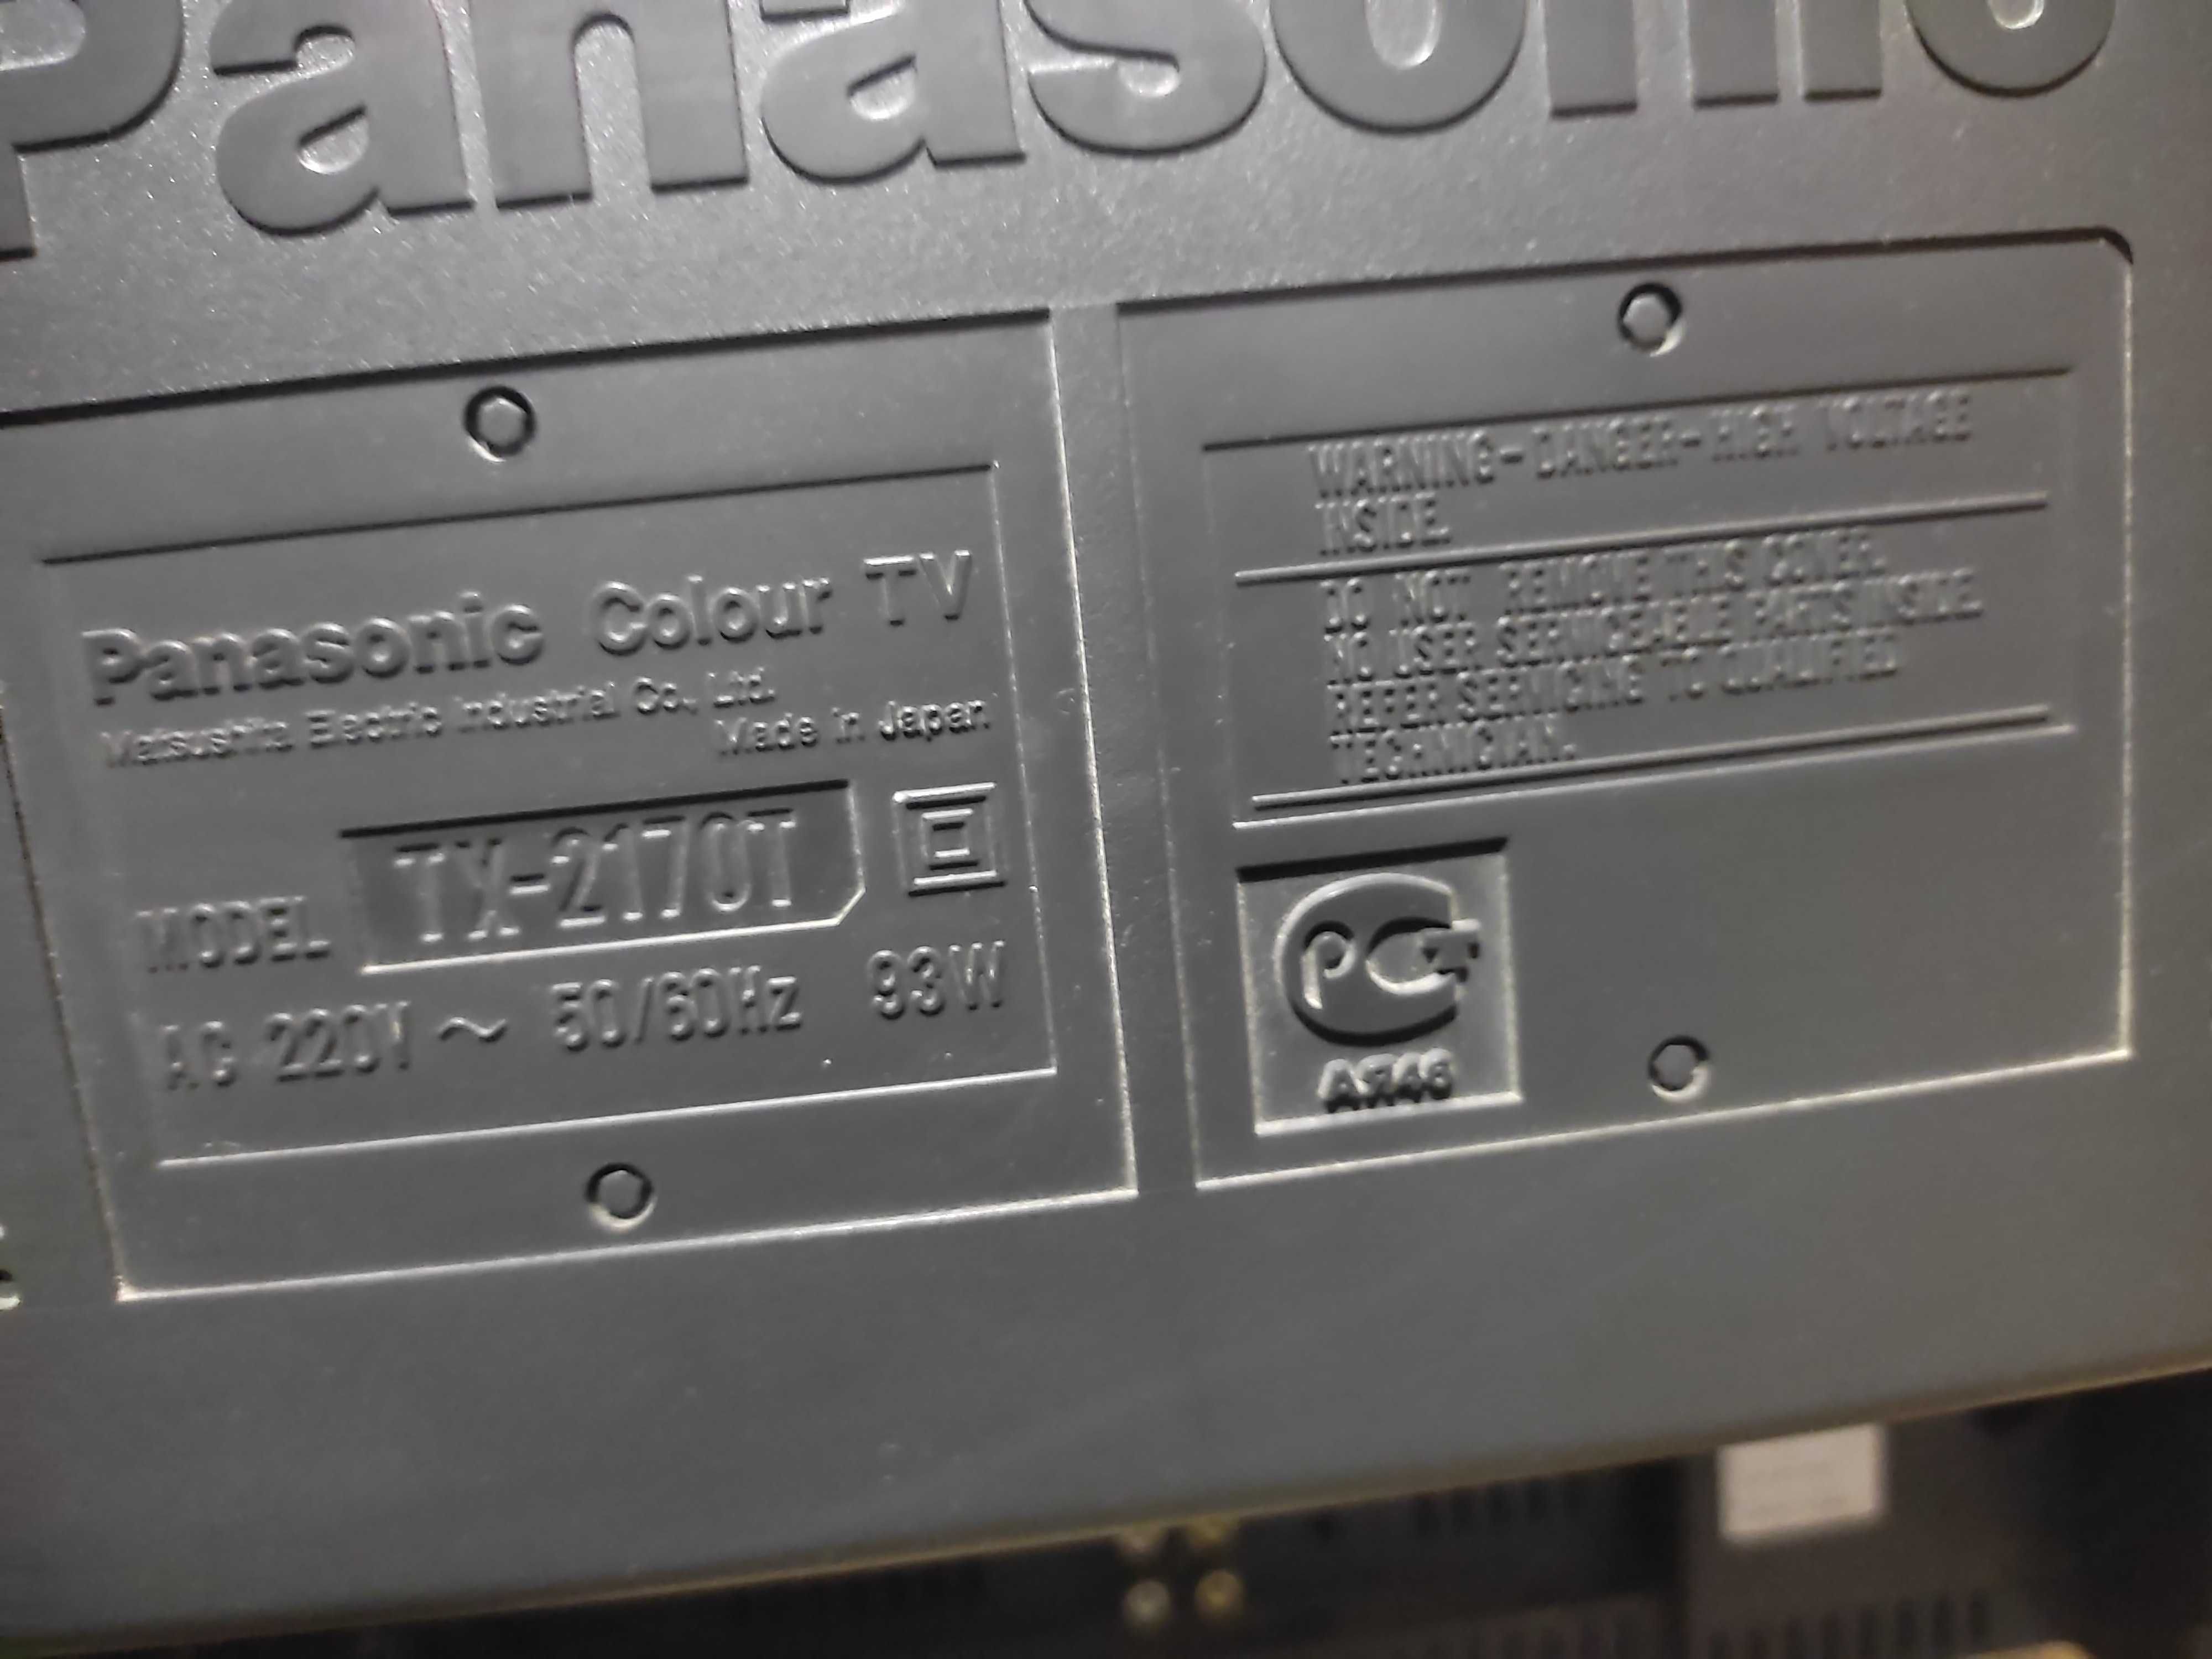 Телевизор Panasonic GAOO 70 TX-2170T 54 см (21 дюйм) Made in Japan.